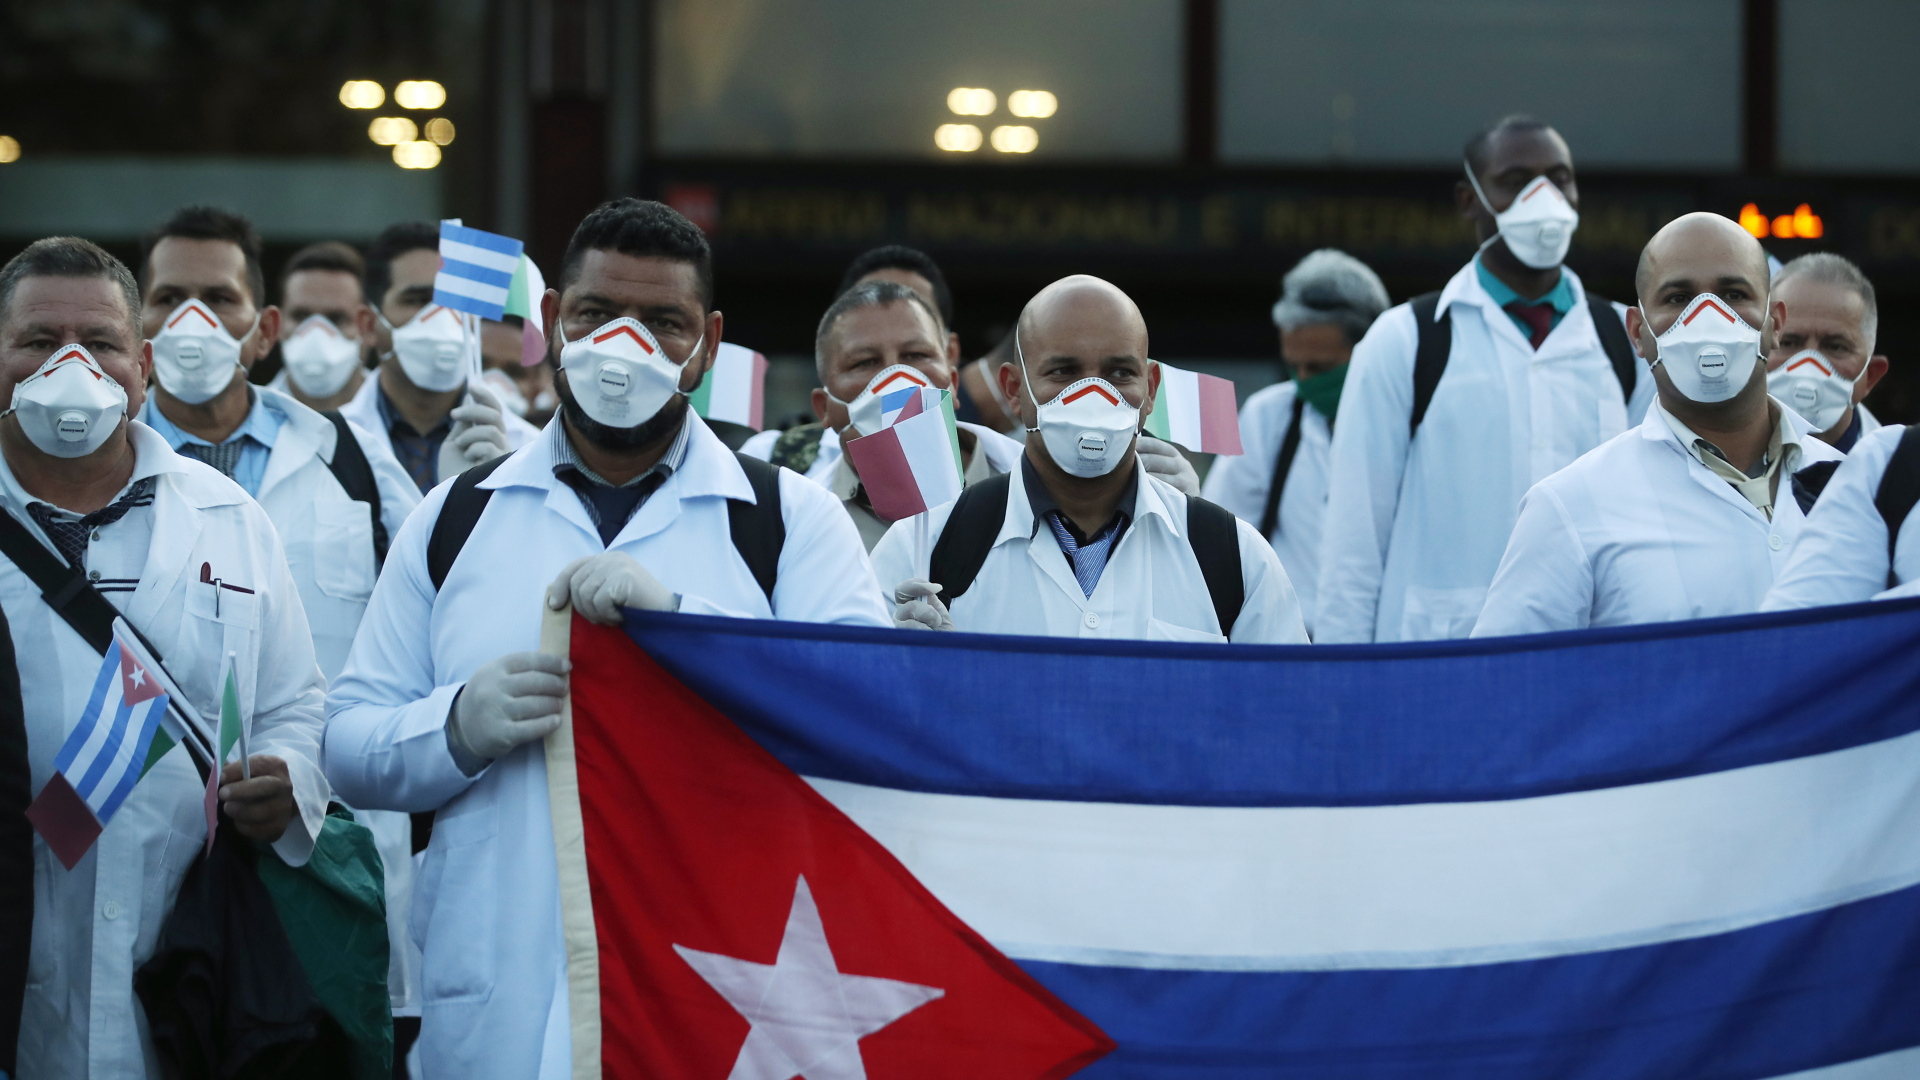 Kubanische Ärzte mit Flagge bei der Ankunft am italienischen Flughafen Malpensa | Bildquelle: dpa